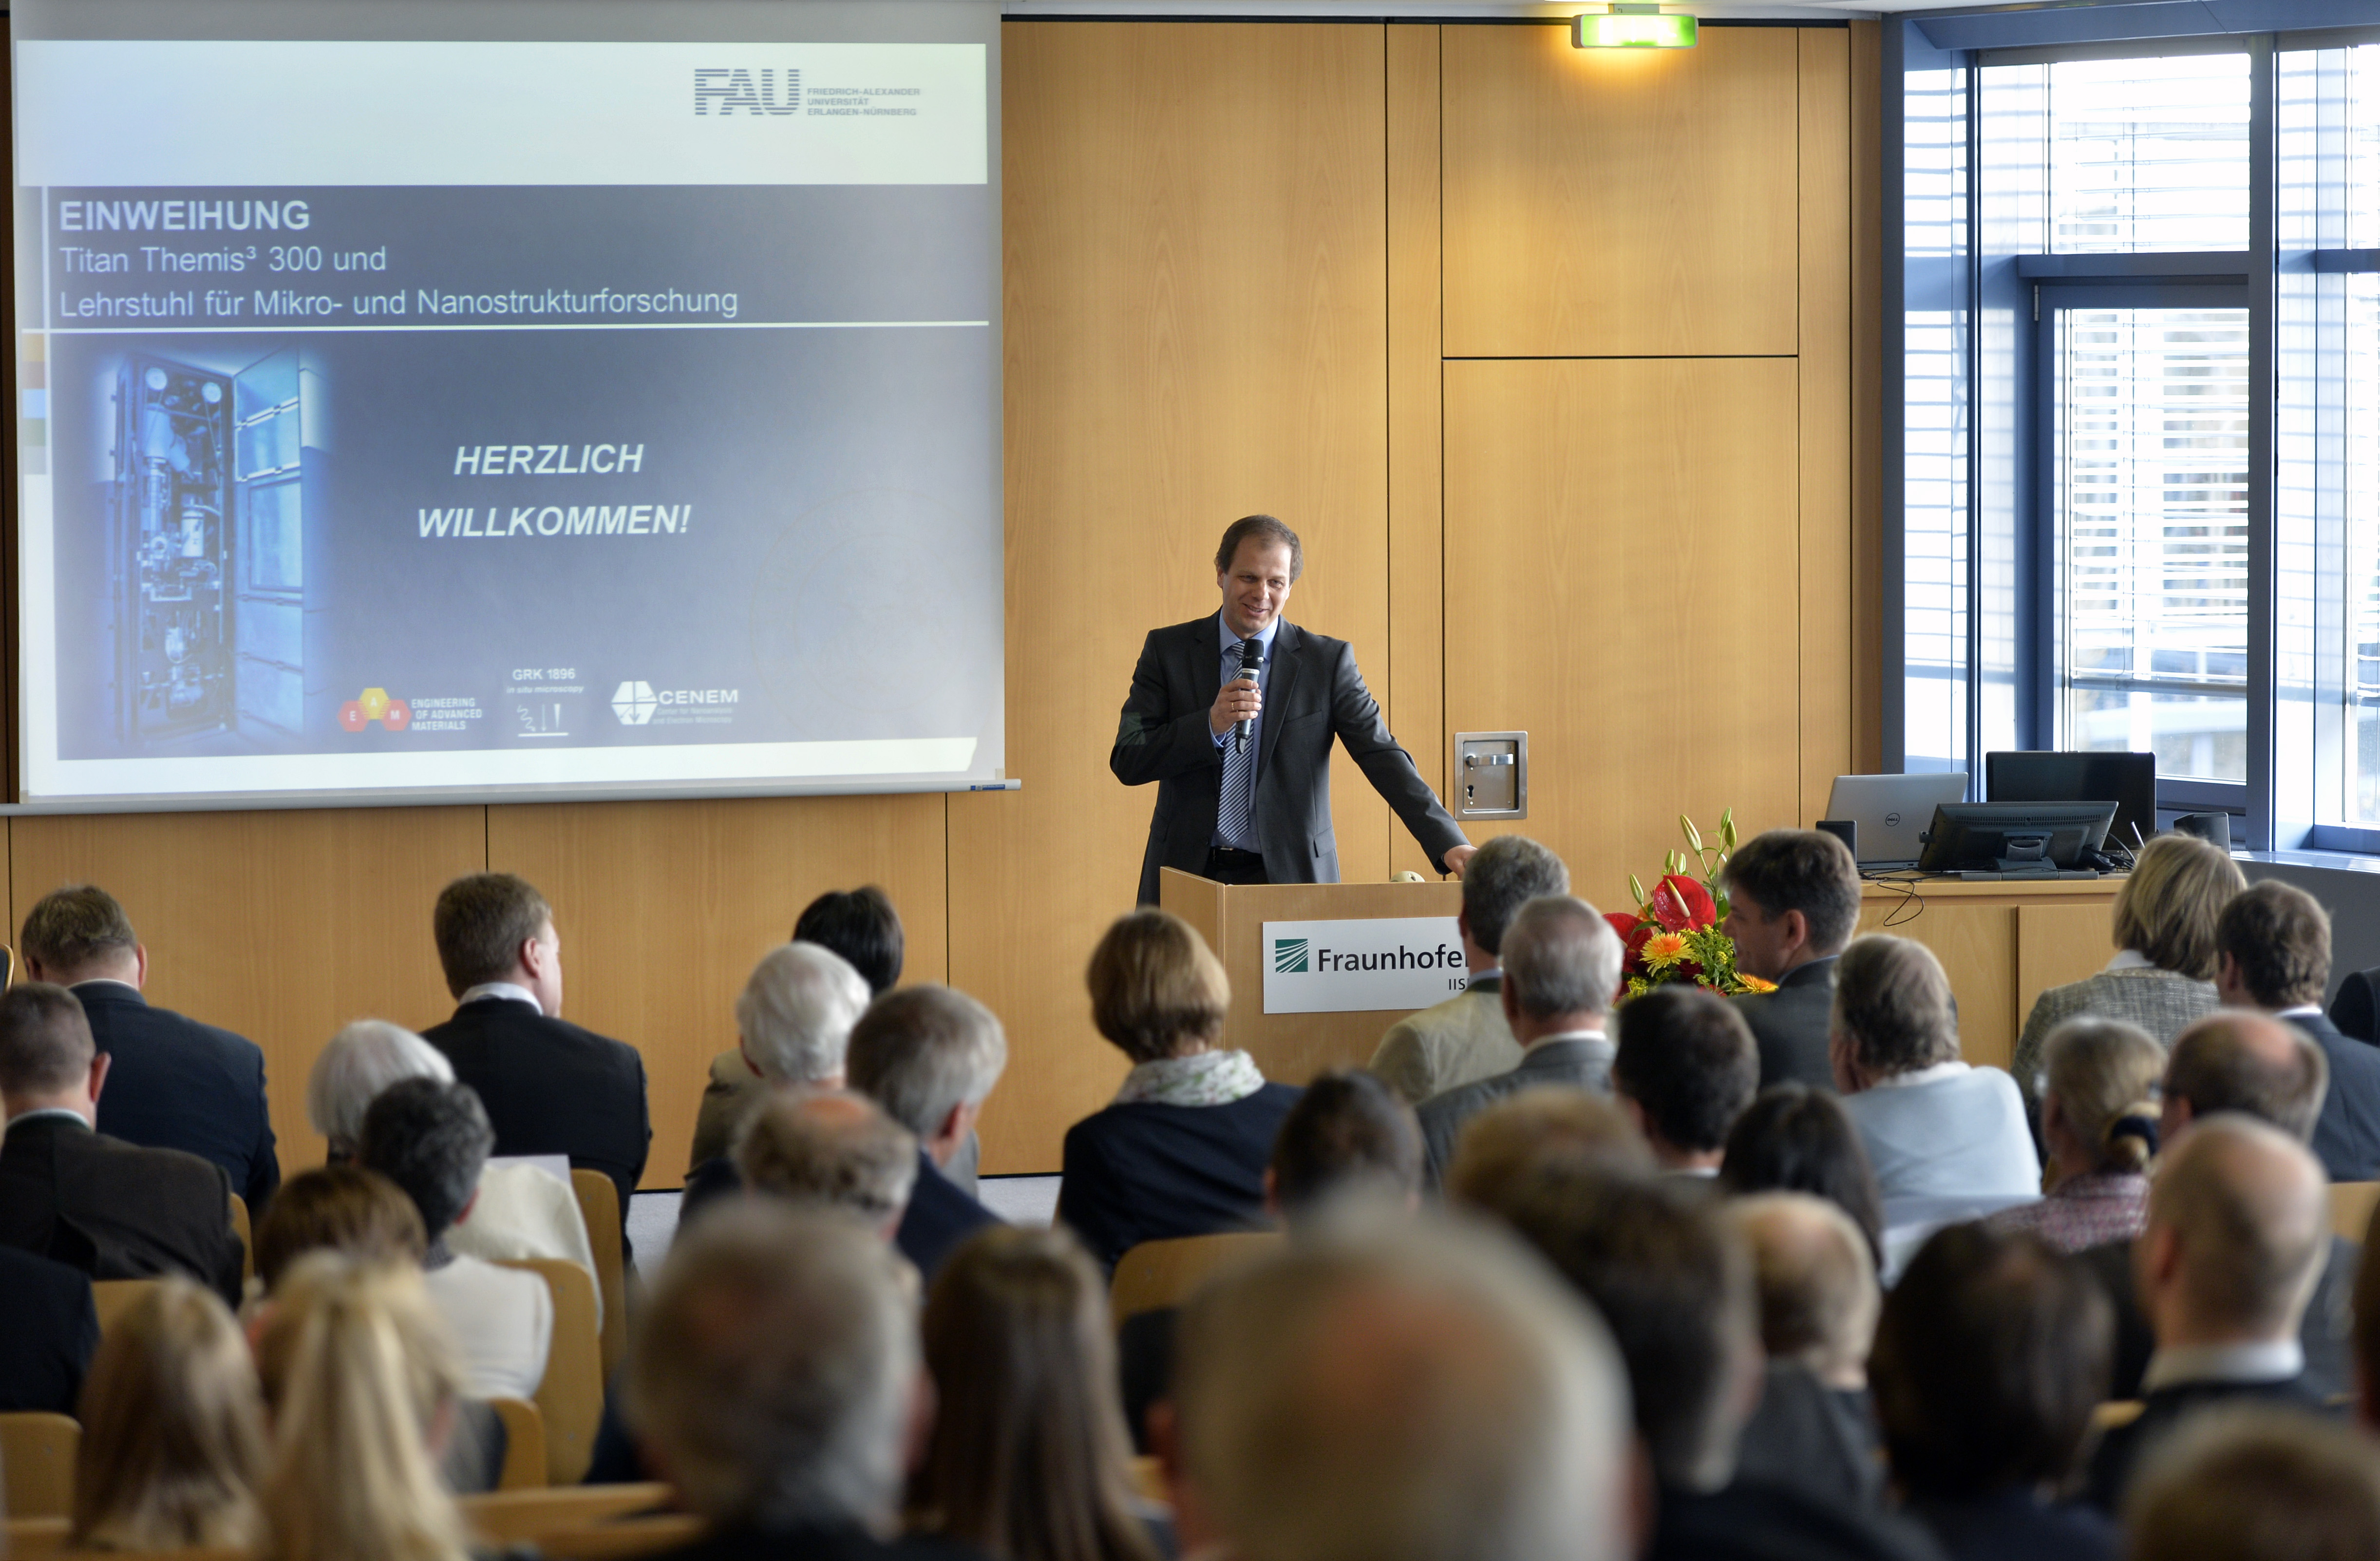 Prof. Dr. Erdmann Spiecker, Leiter des neuen Lehrstuhls für Mikro- und Nanostrukturforschung